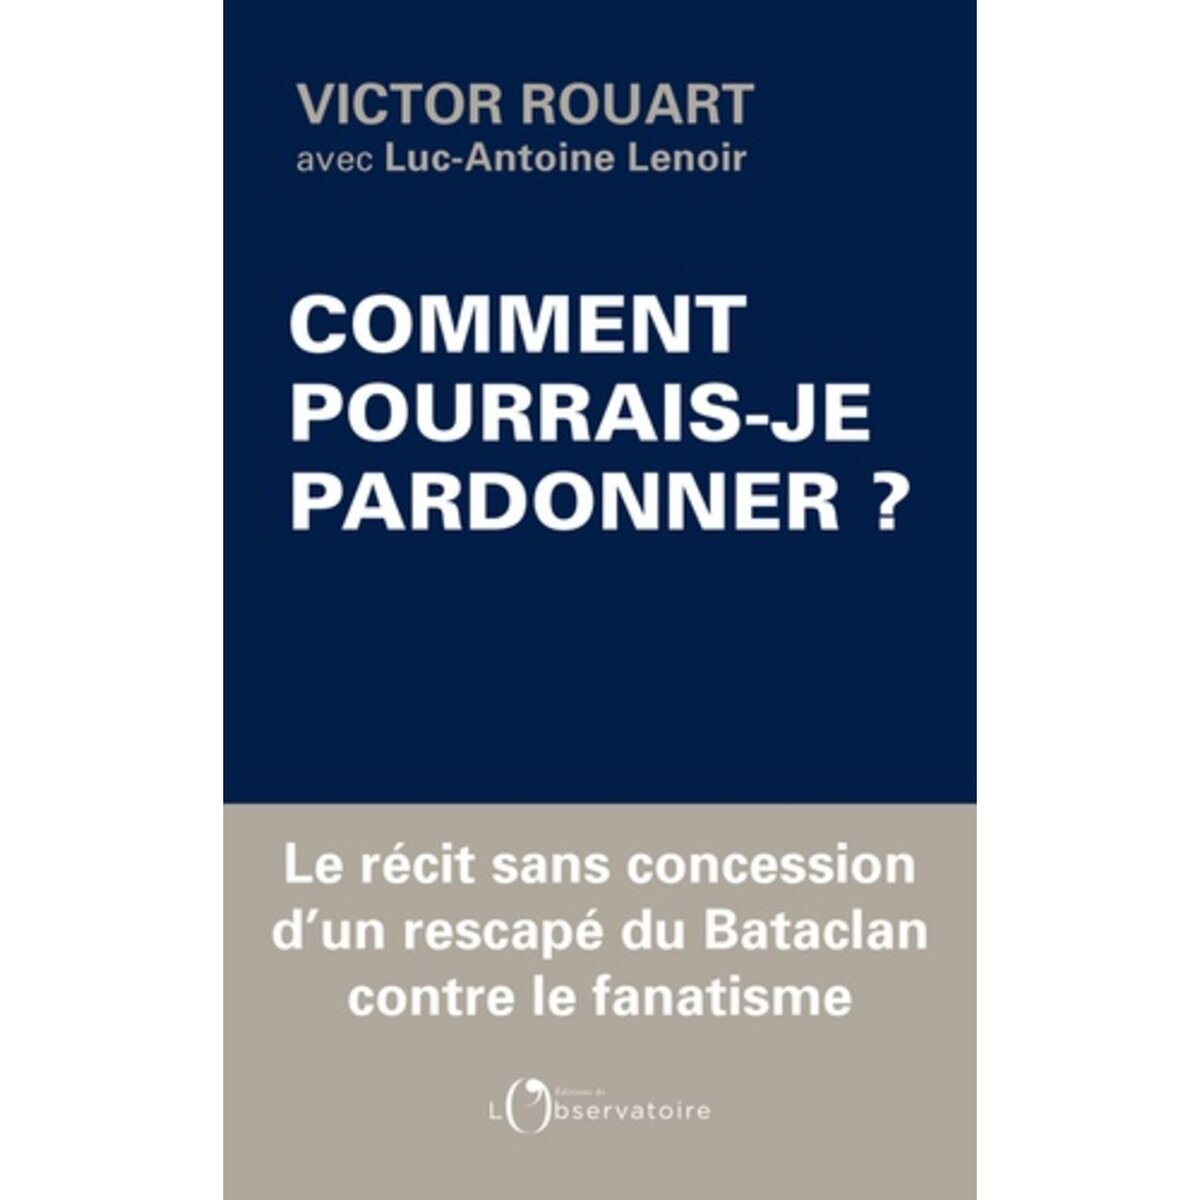  COMMENT POURRAIS-JE PARDONNER ?, Rouart Victor